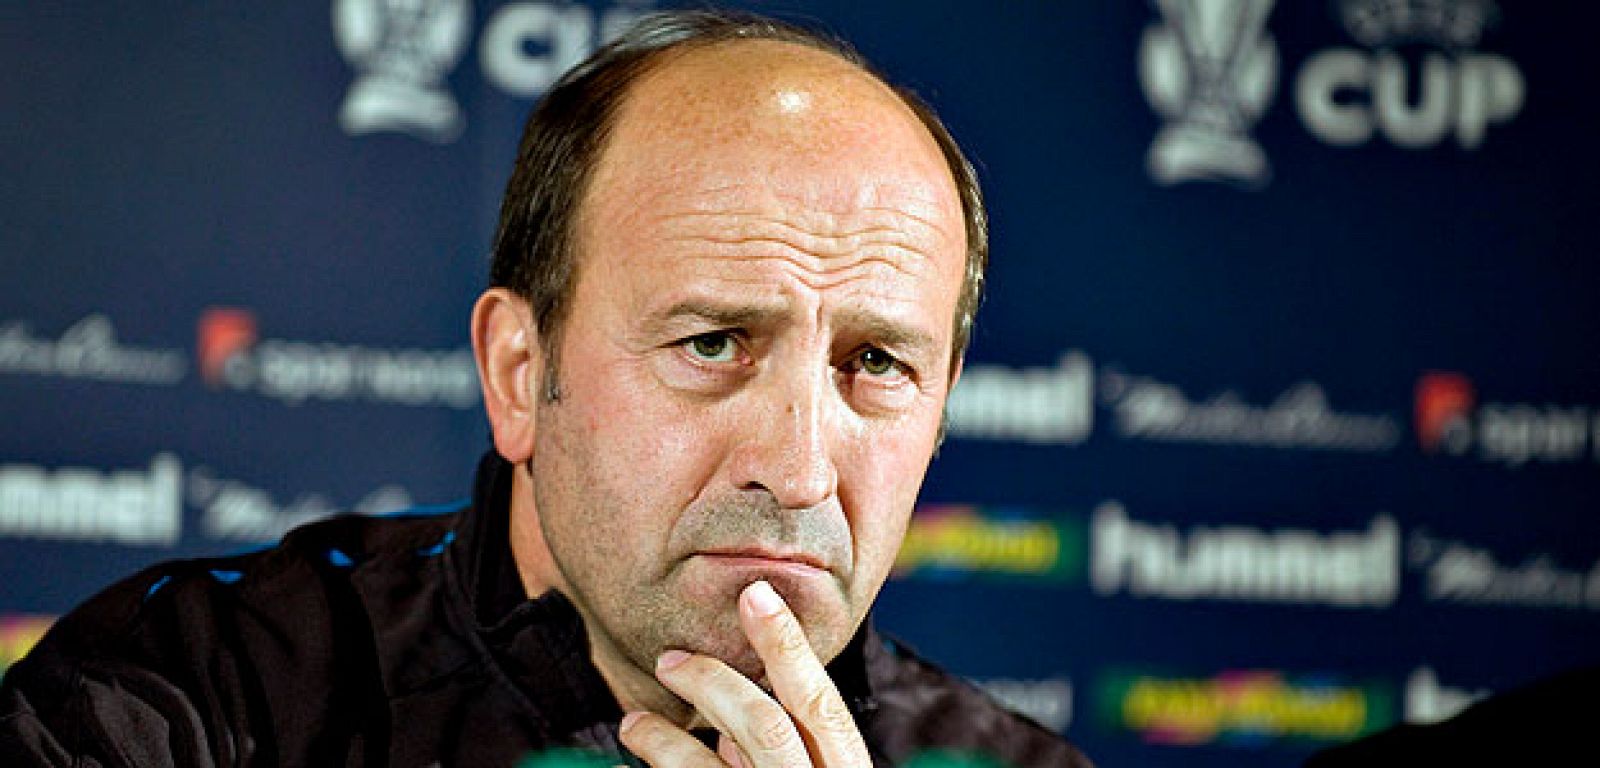 El entrenador del Deportivo de La Coruña, Miguel Ángel Lotina, durante una rueda de prensa en Aalborg, Dinamarca.